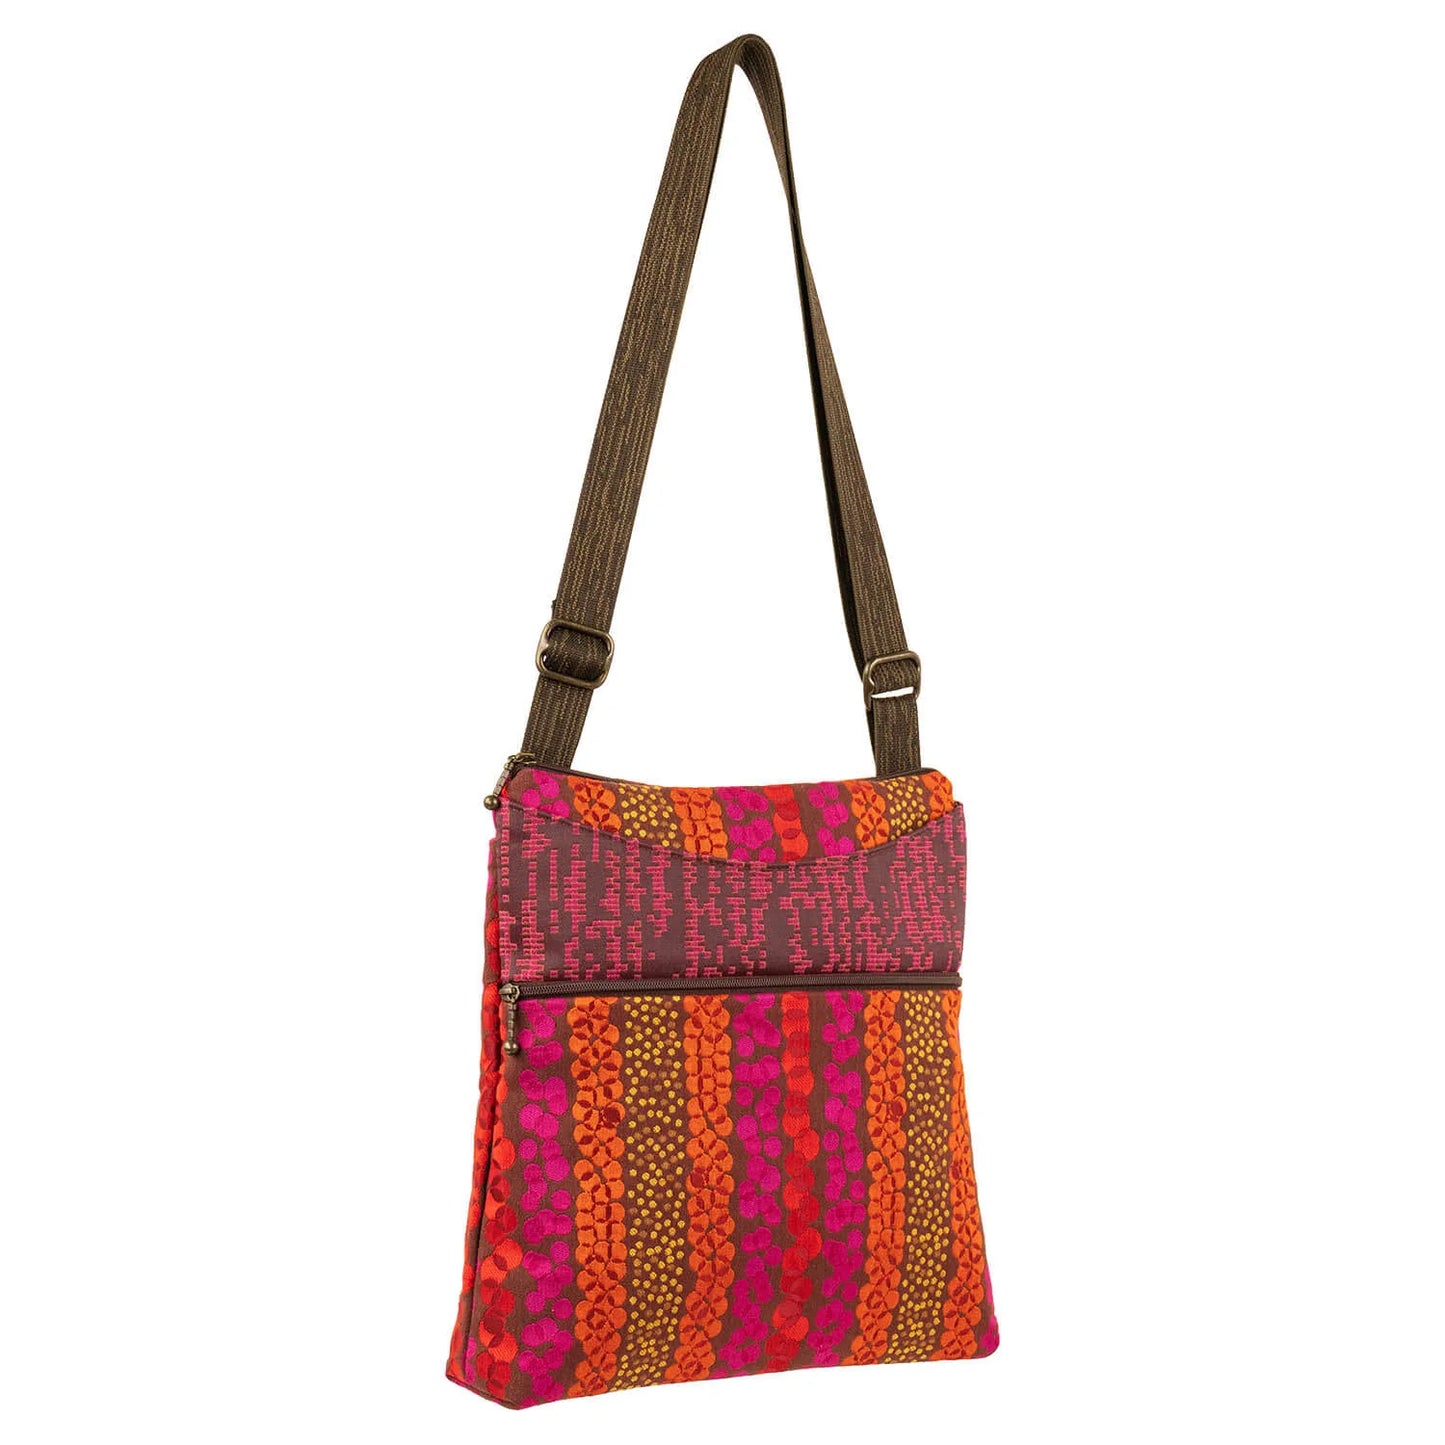 Spree Bag in Celestial Hot by Maruca Designs